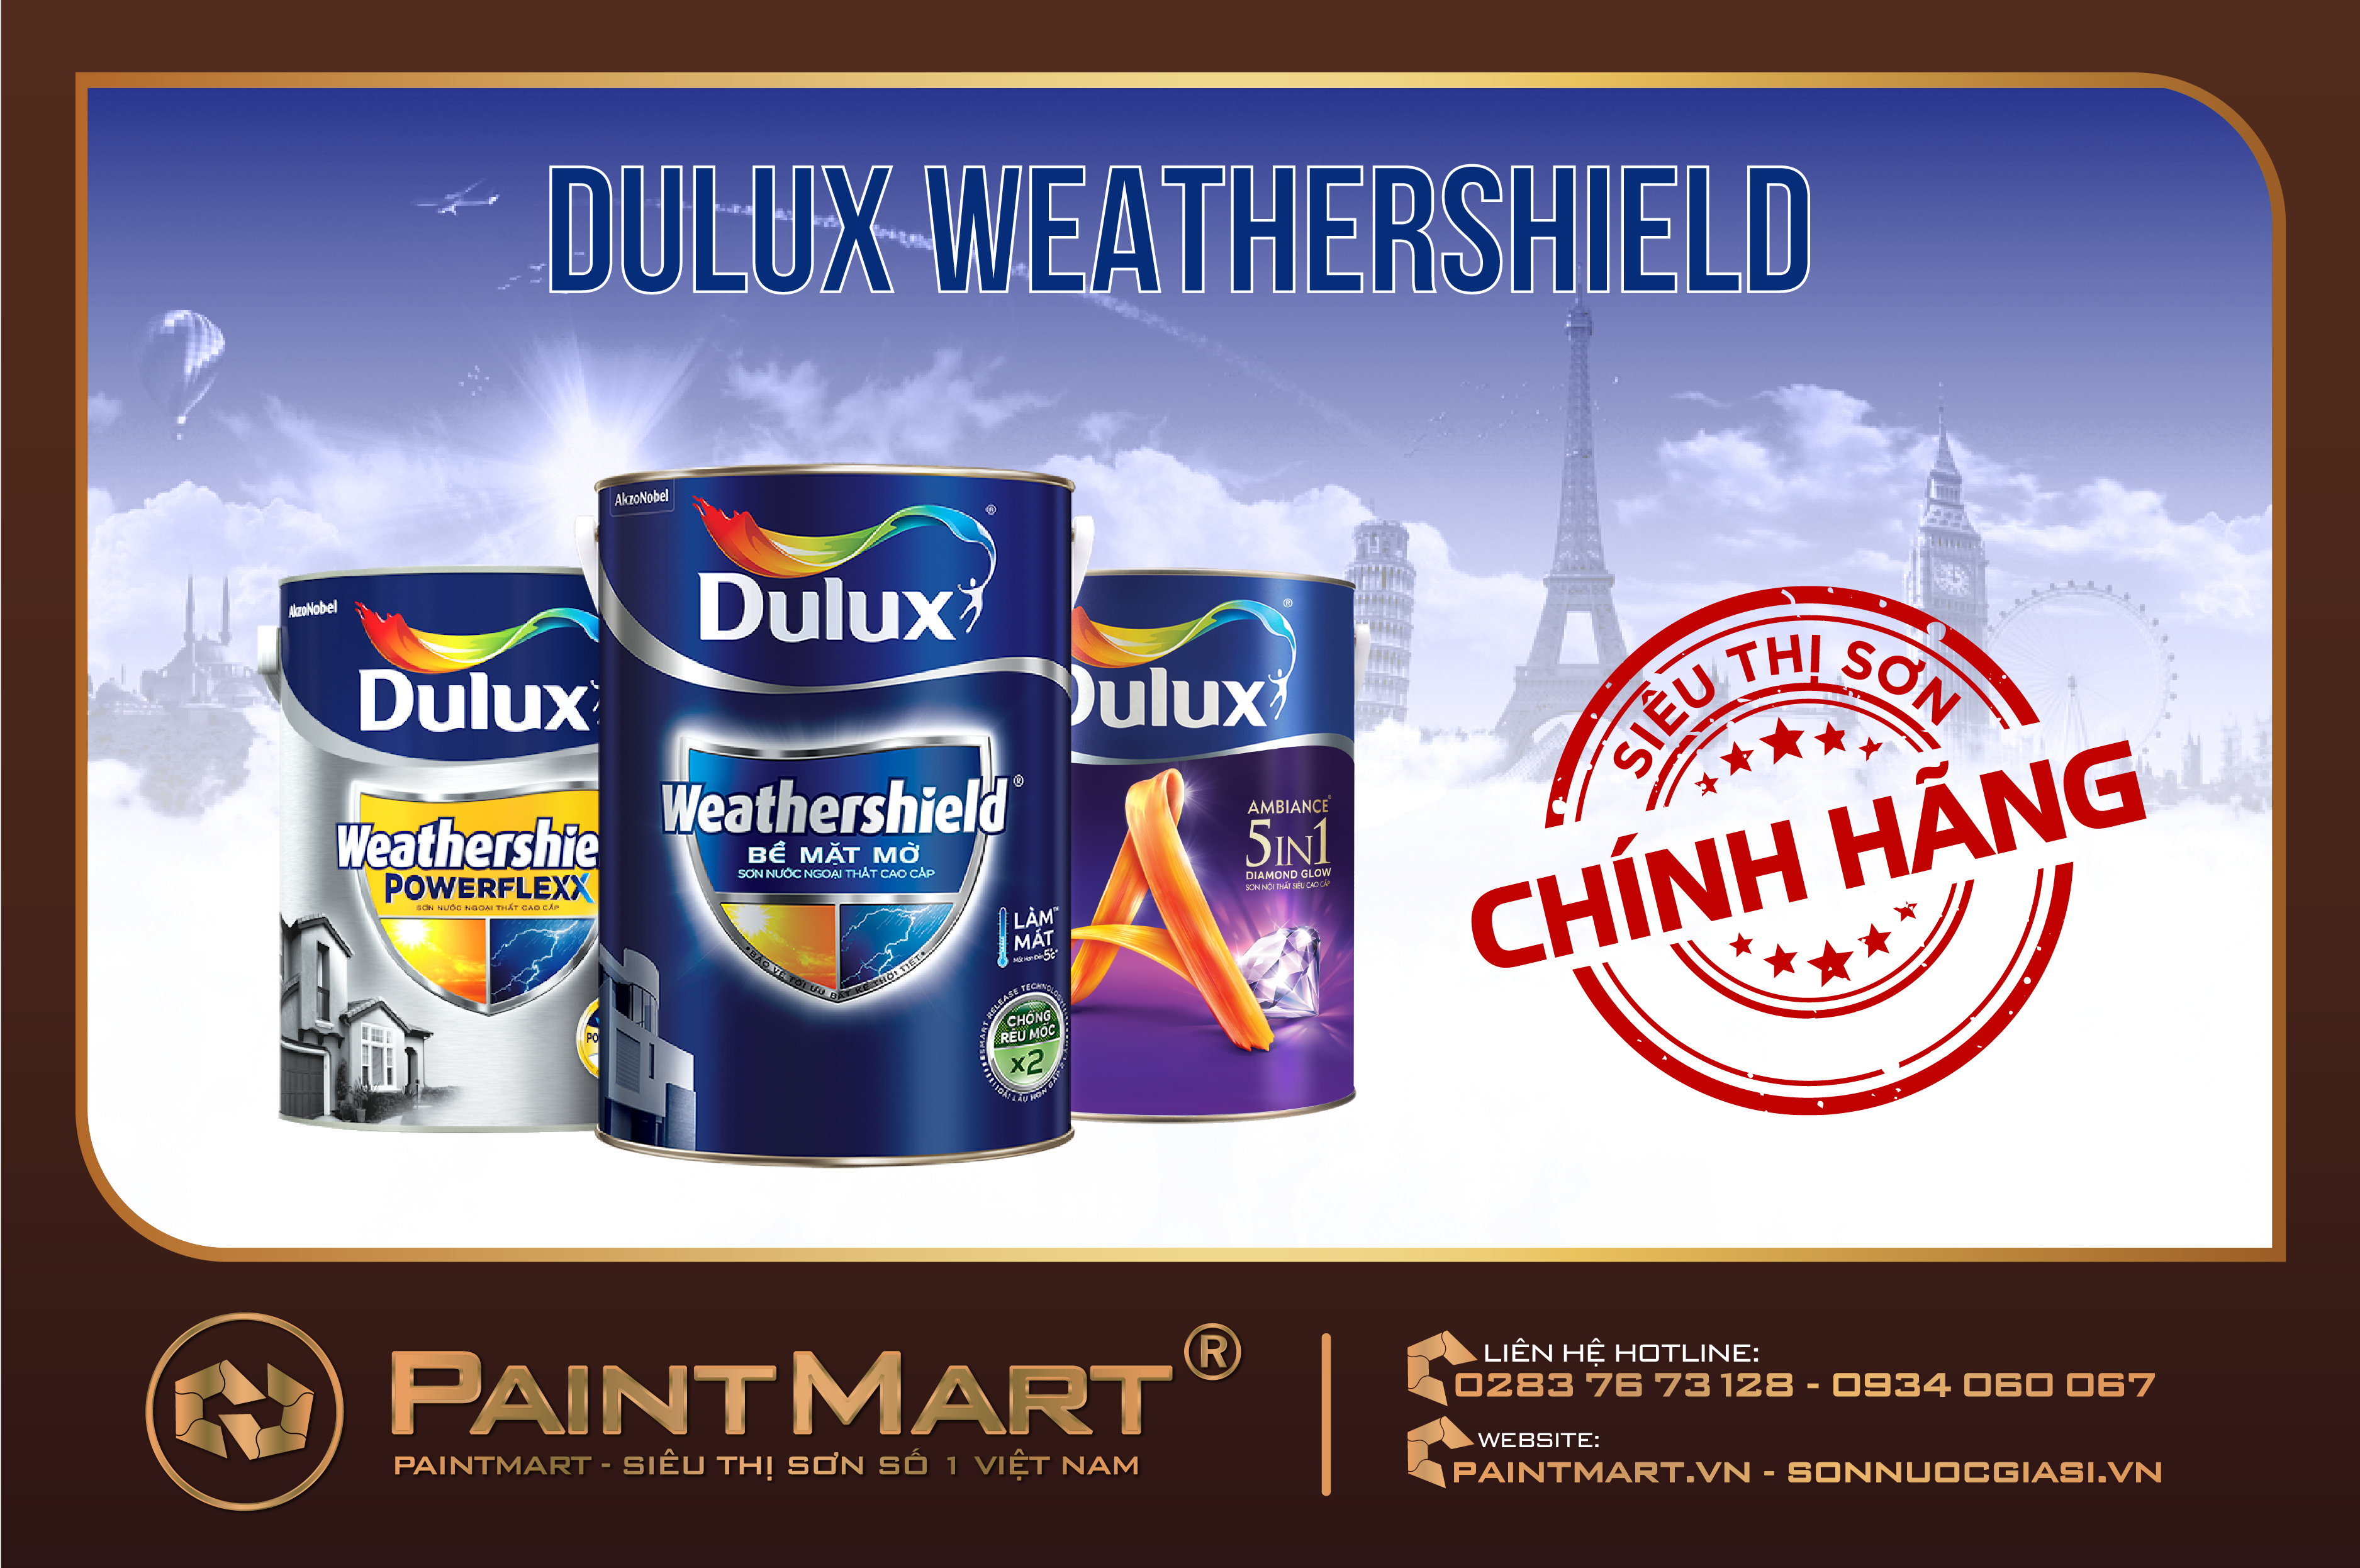 Dulux Weathershield là sản phẩm sơn chống thấm cao cấp, giúp bảo vệ ngôi nhà của bạn khỏi các tác động của thời tiết. Để tìm hiểu thêm về sản phẩm này, hãy xem những hình ảnh đầy ấn tượng.